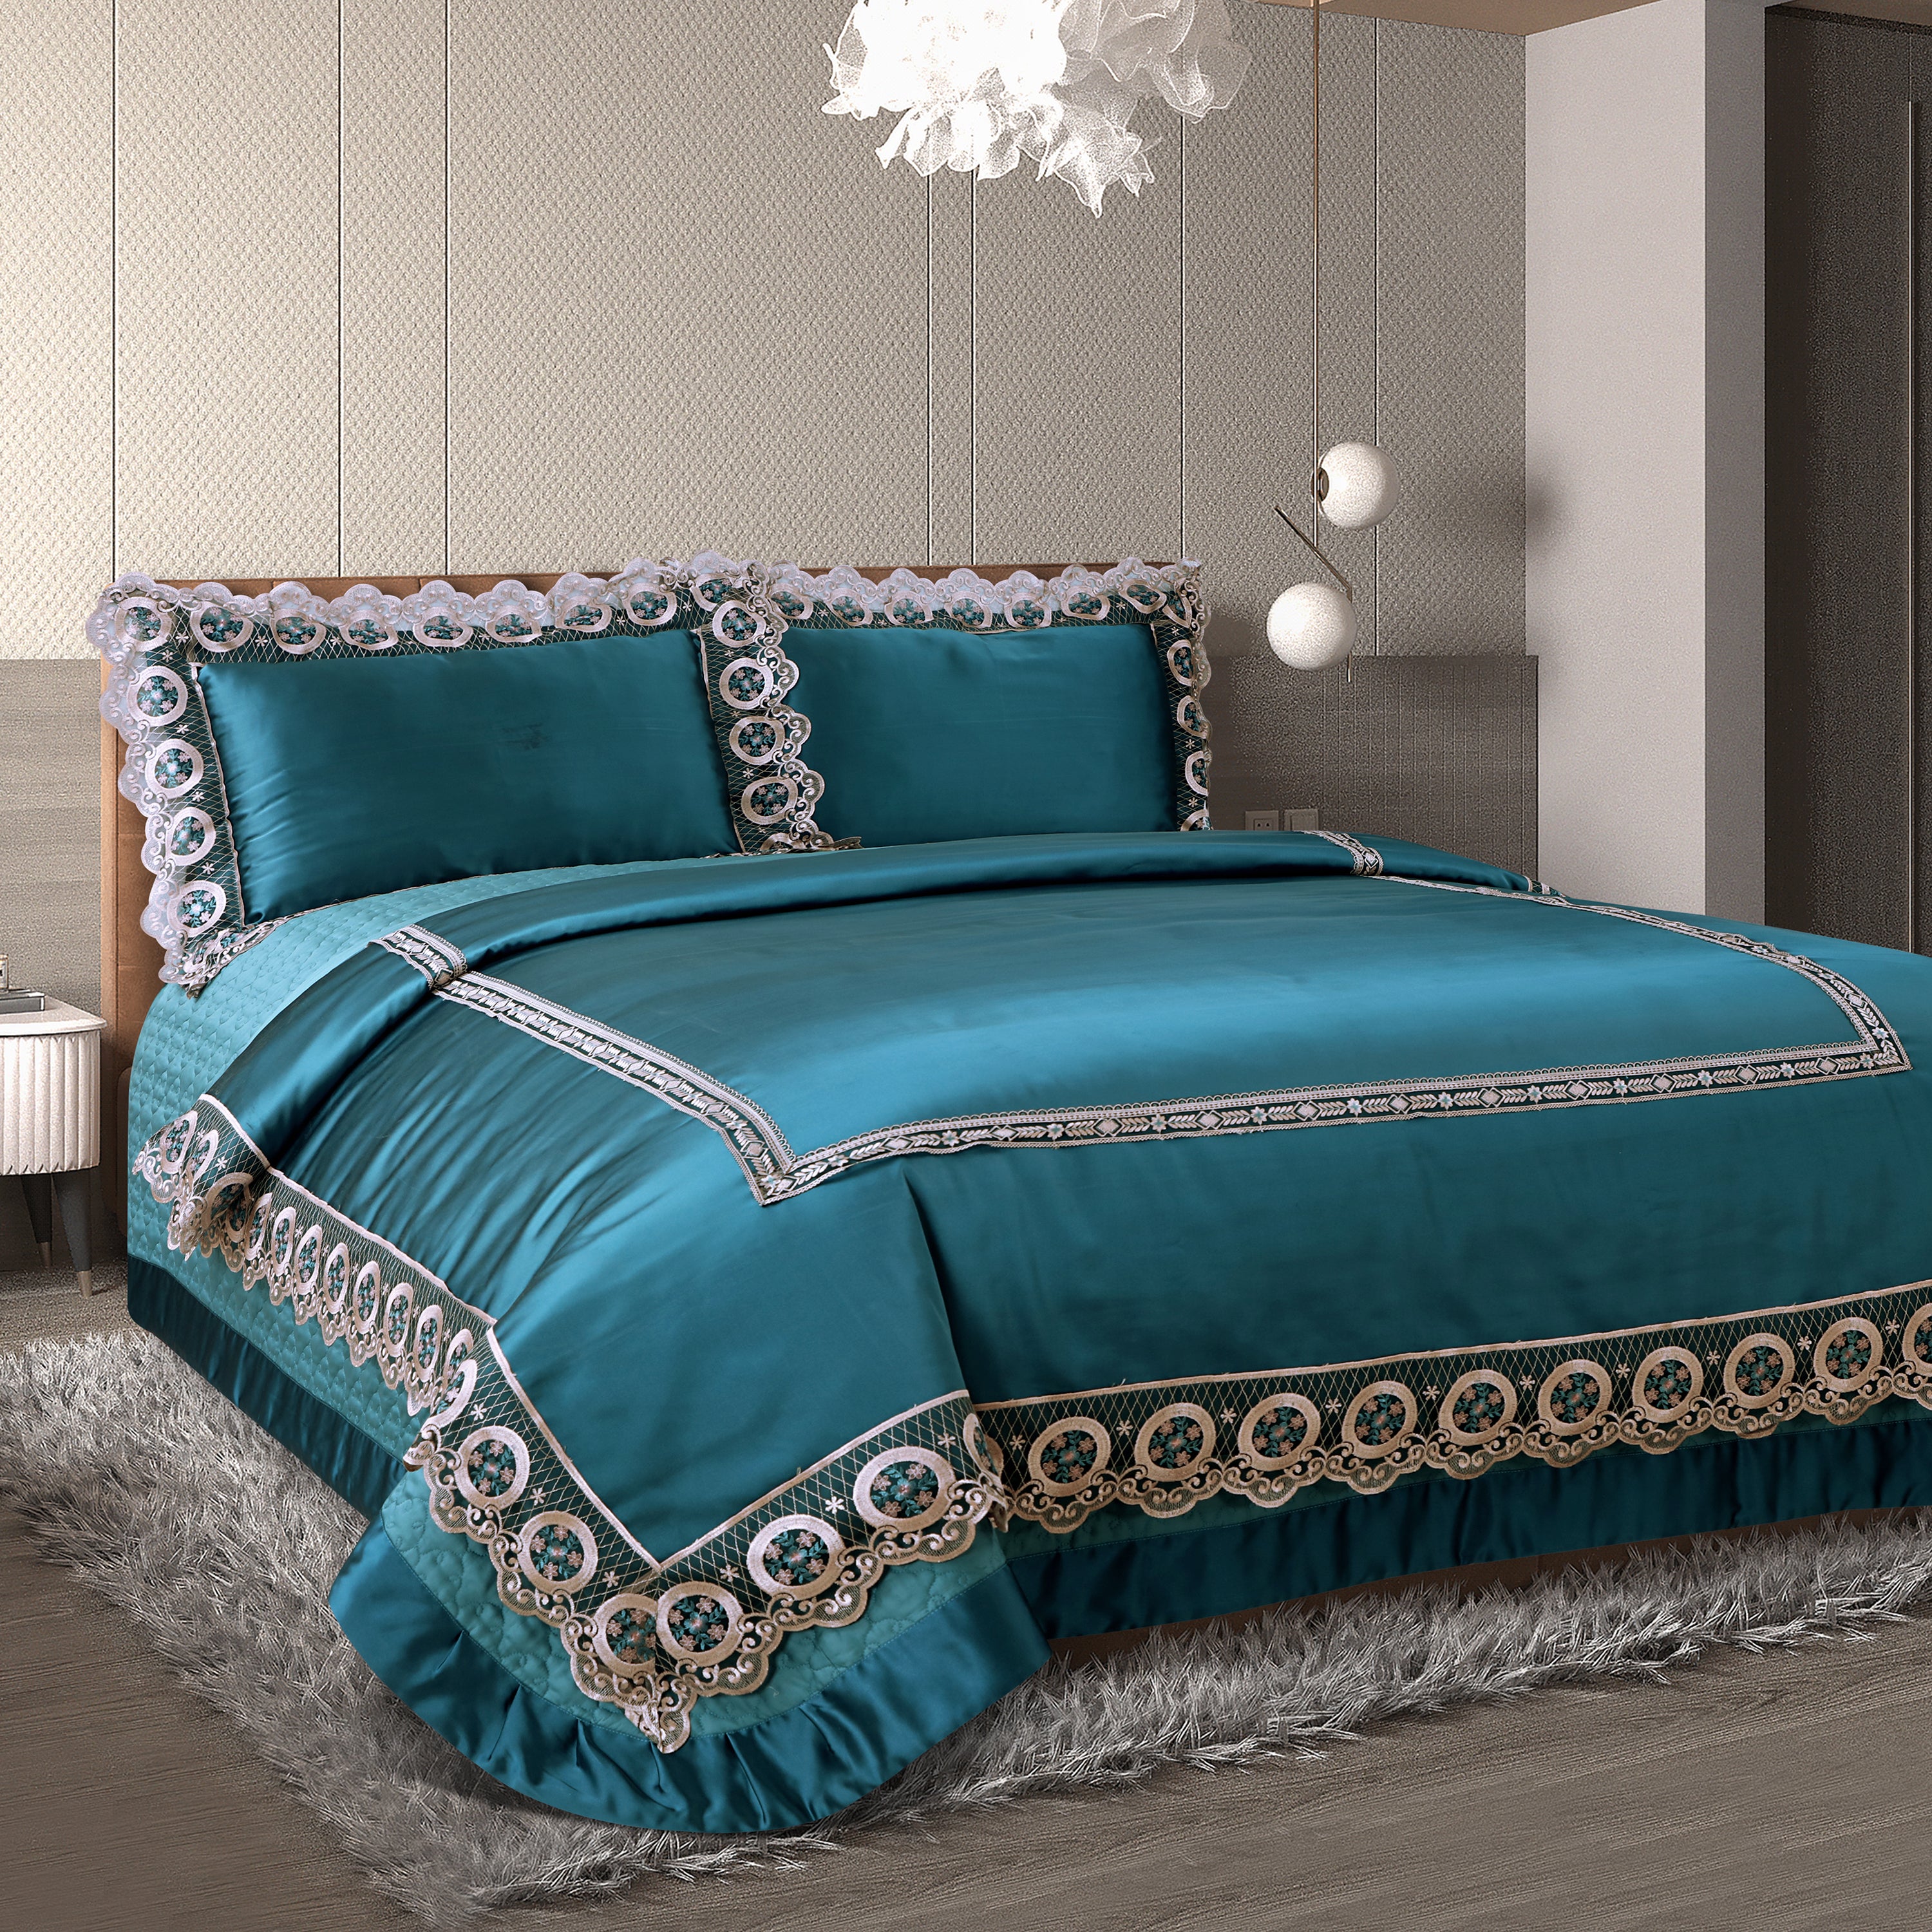 The Lase Trousseau Bedding Set